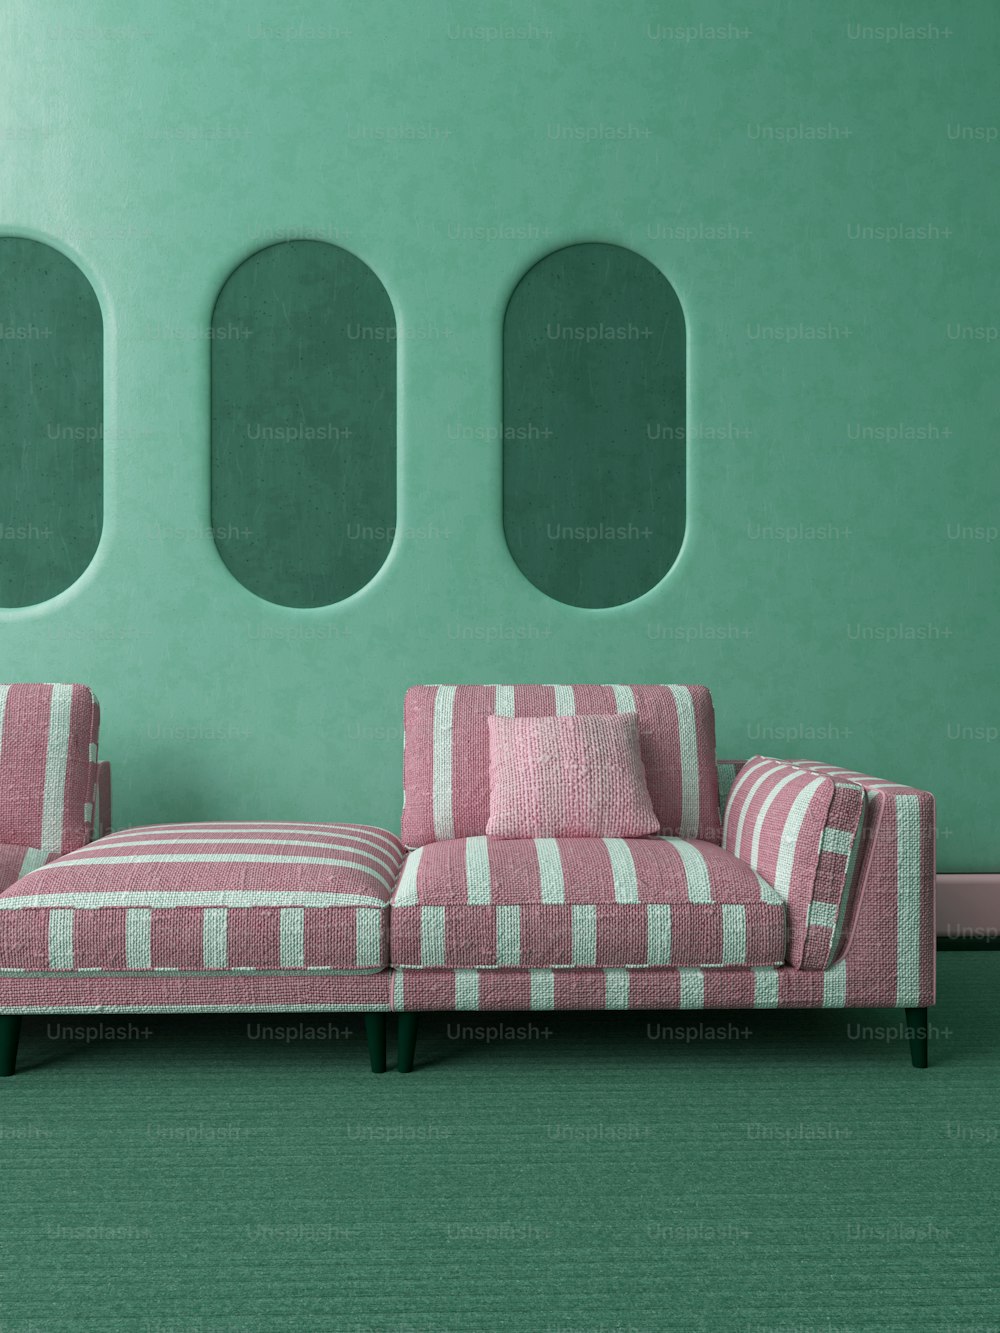 Eine rosa-weiße Couch sitzt vor einer grünen Wand